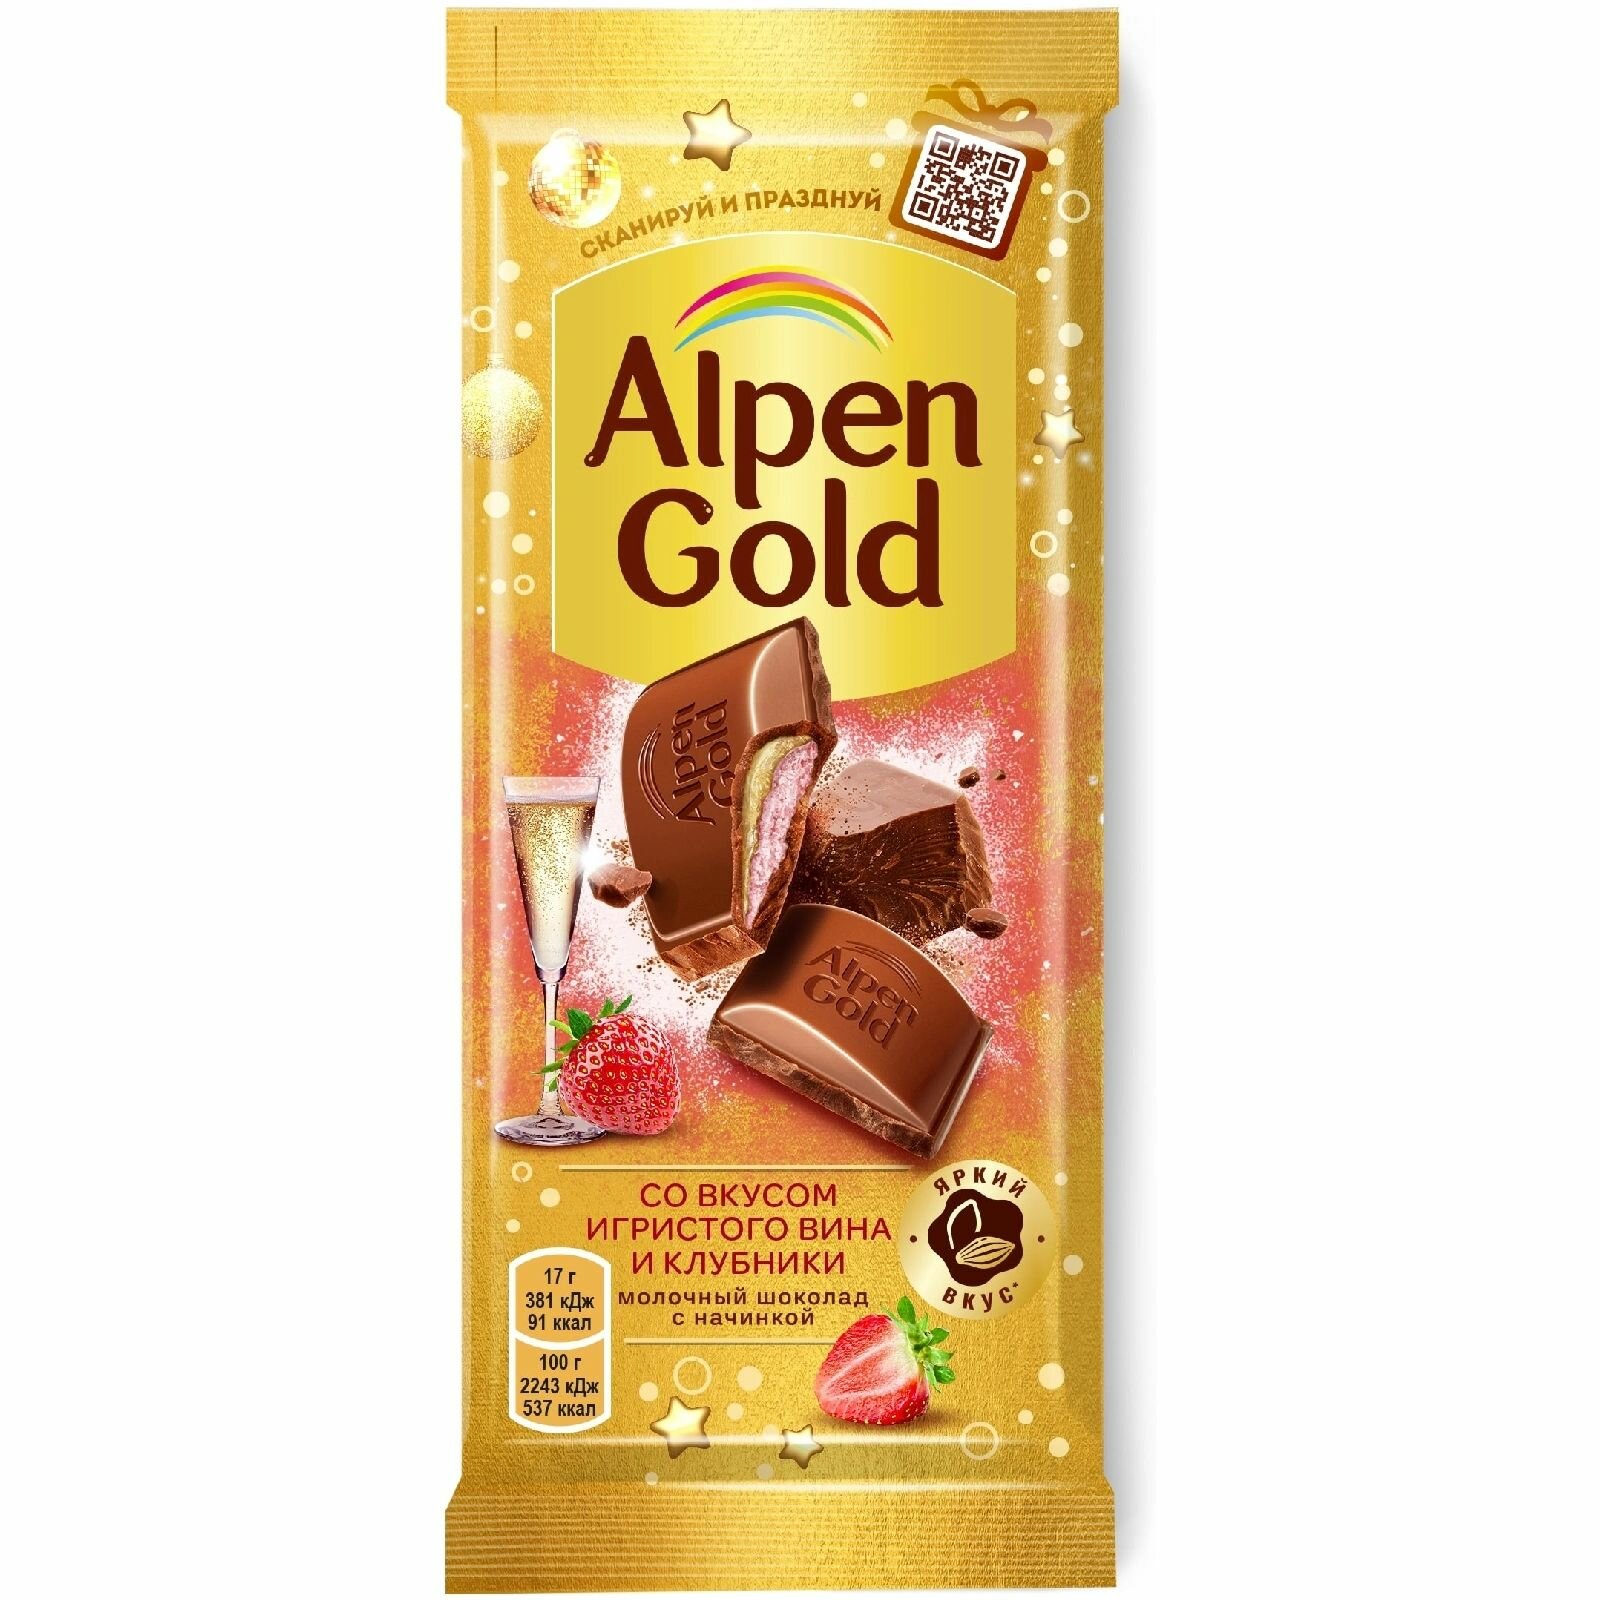 Шоколад молочный Alpen Gold с начинкой игристое вино-клубника, 85г, 1 шт